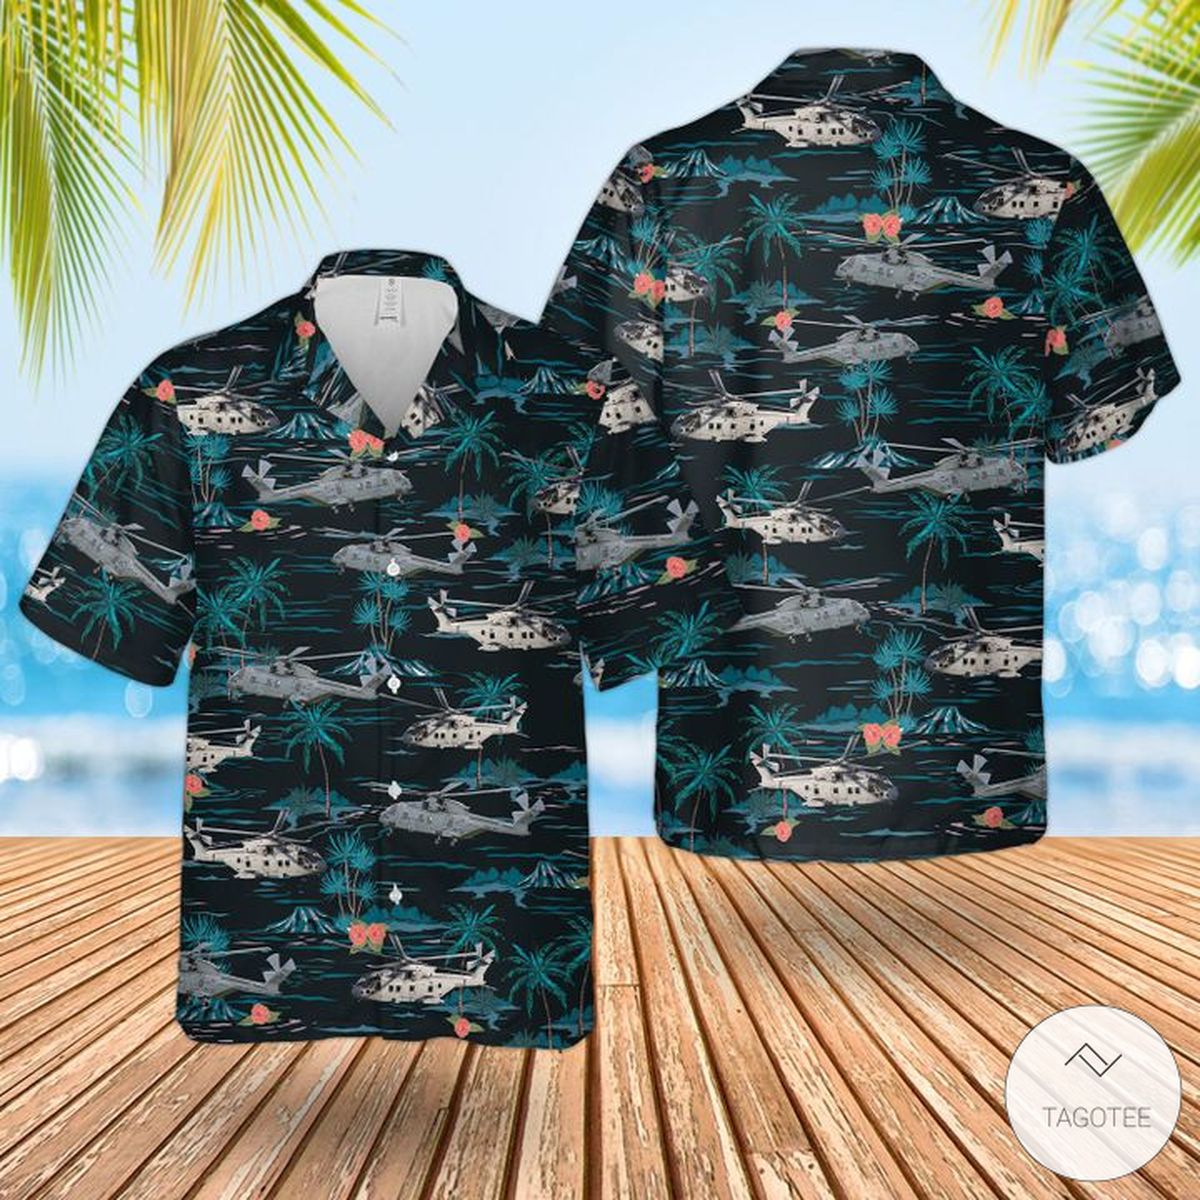 Rn Merlin Mk4 Hawaiian Shirt